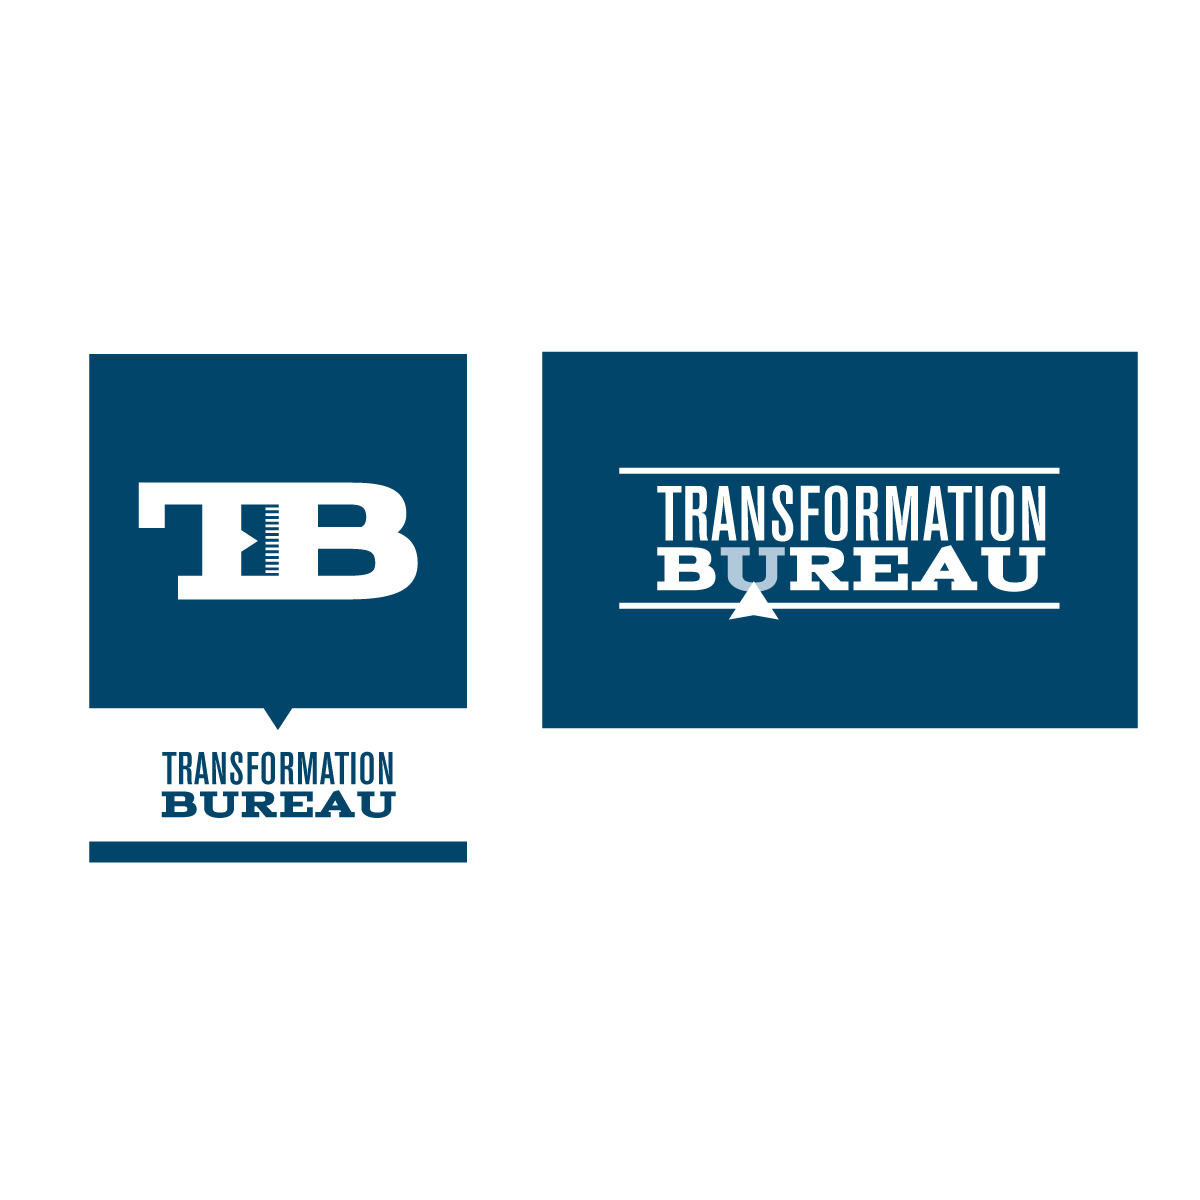 transformation bureau logo and wordmark